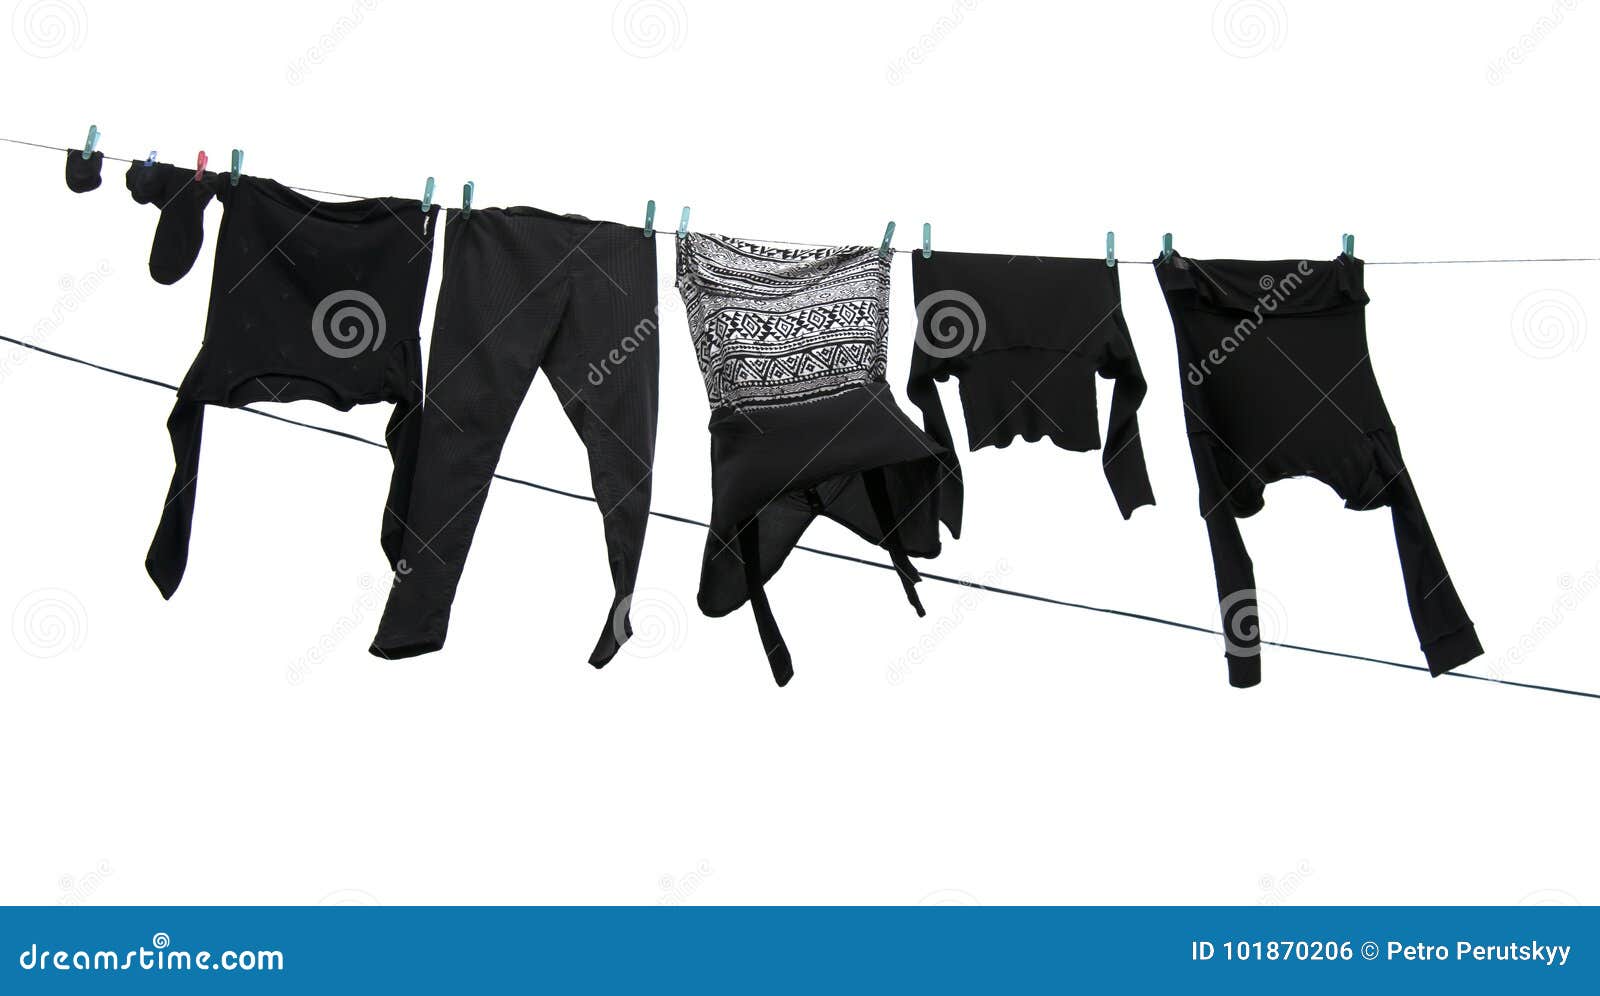 Washing line stock photo. Image of summer, laundry, shirt - 101870206